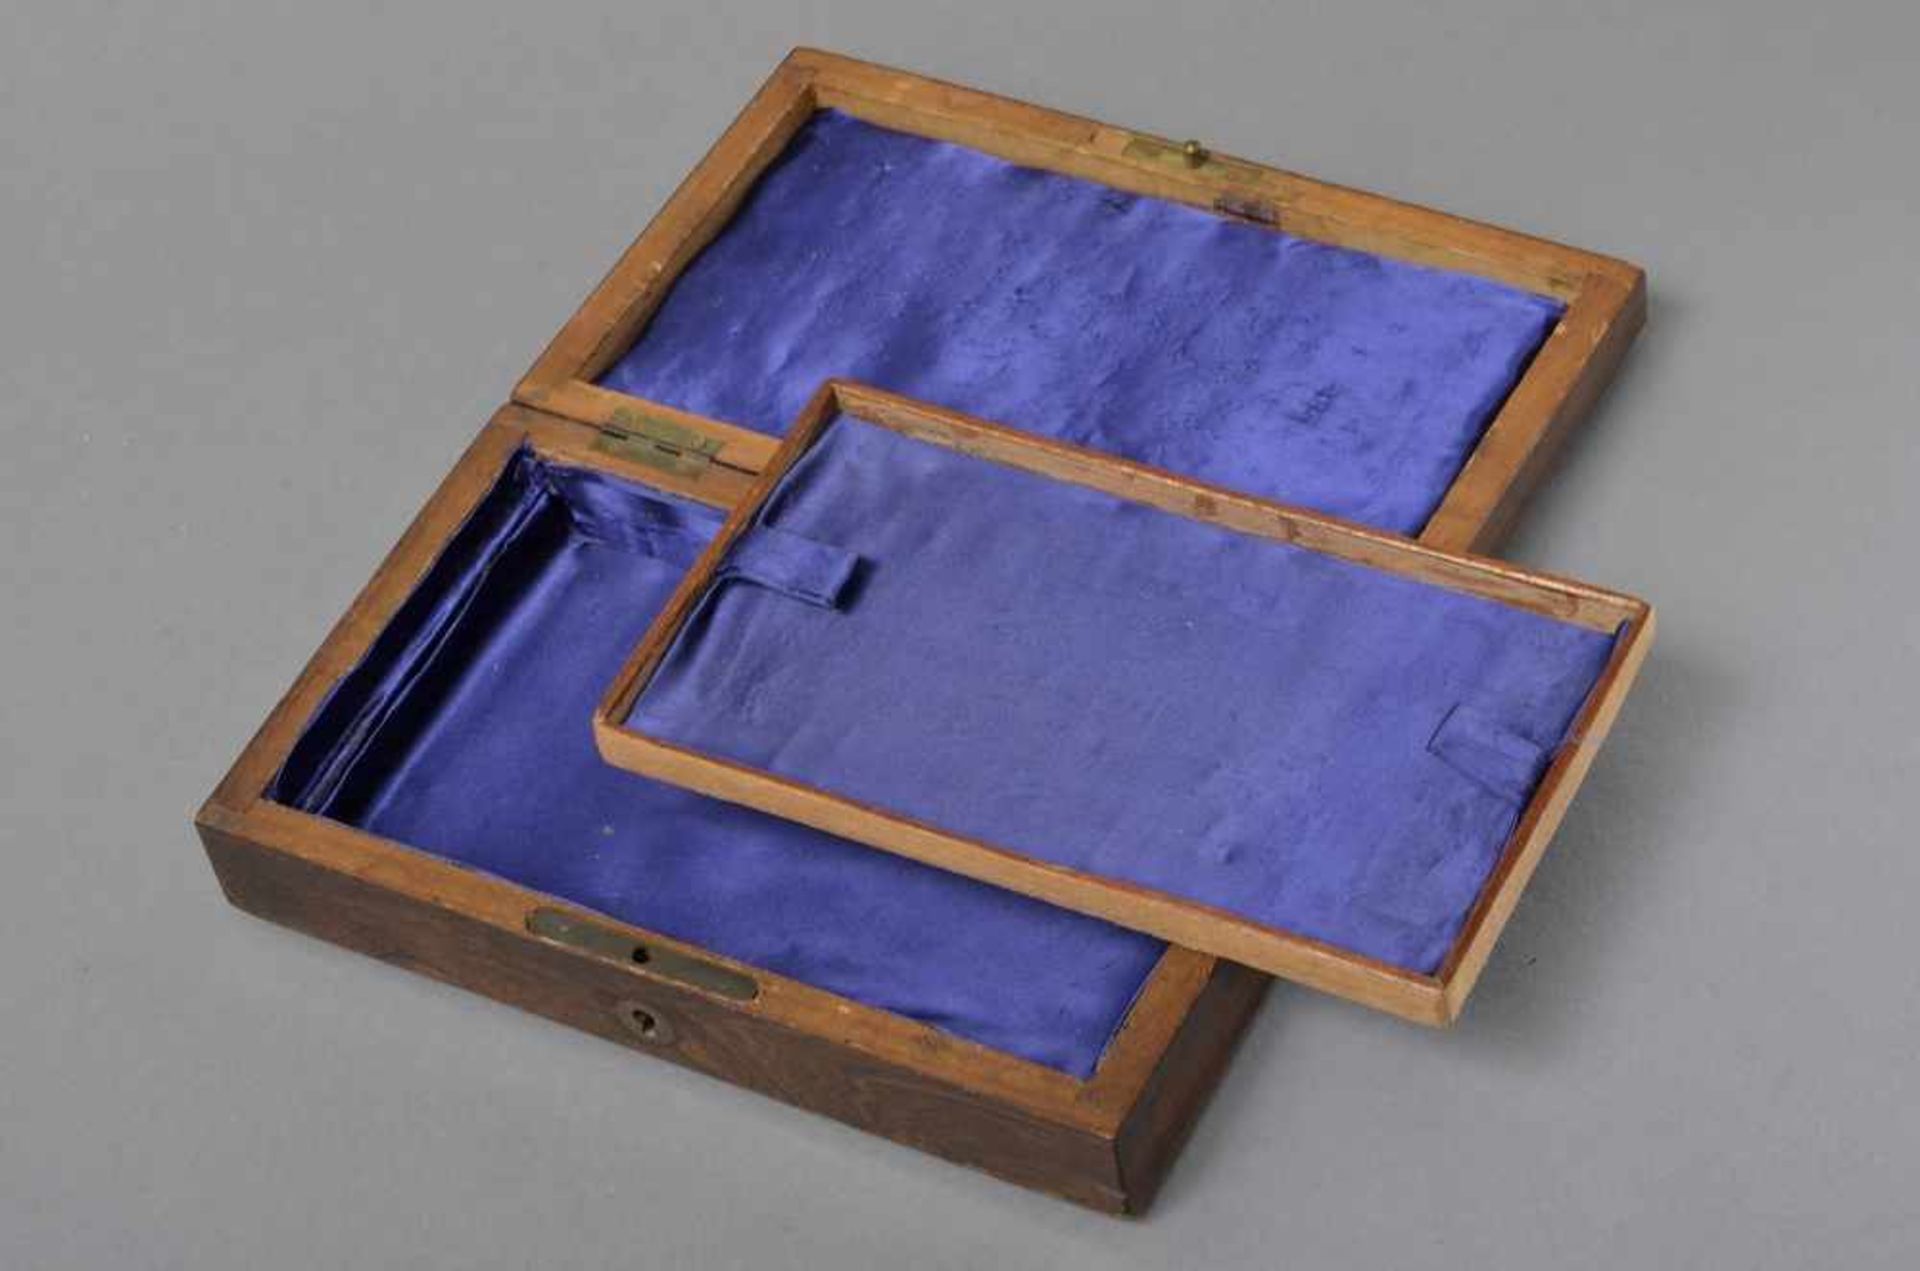 Kleiner Palisander Schmuckkasten mit gravierter Messingplatte "L.C. Jackson", 45x21,5x12,5cm - Bild 2 aus 2